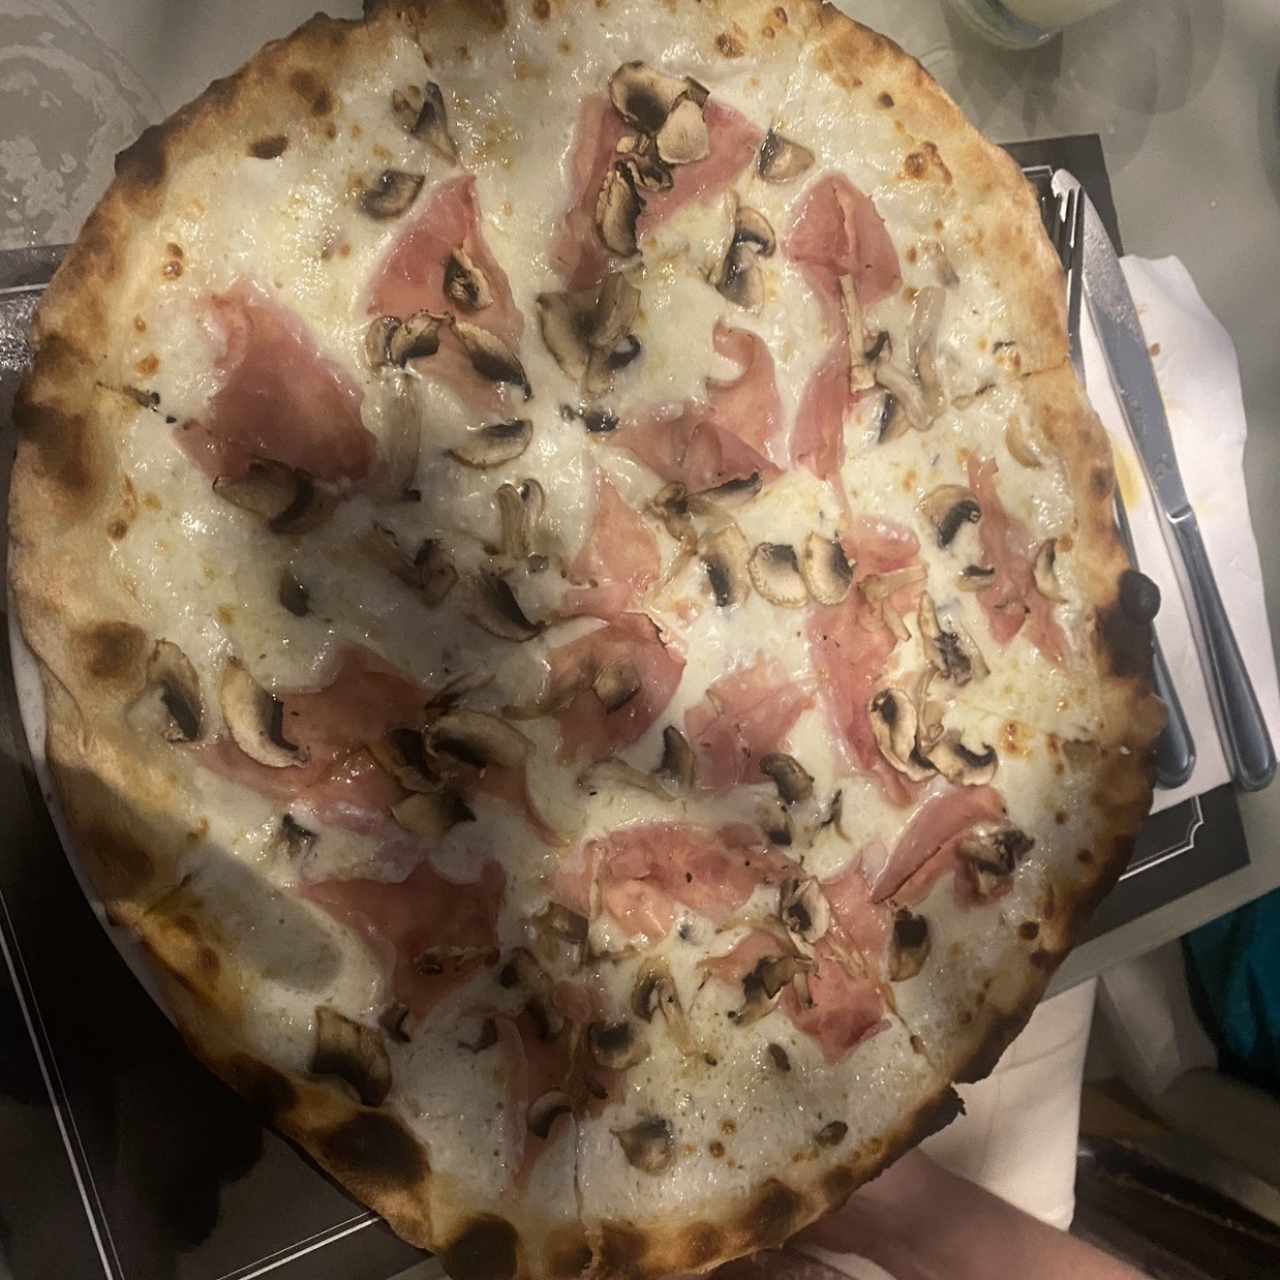 Pizza - Giorgio Armani